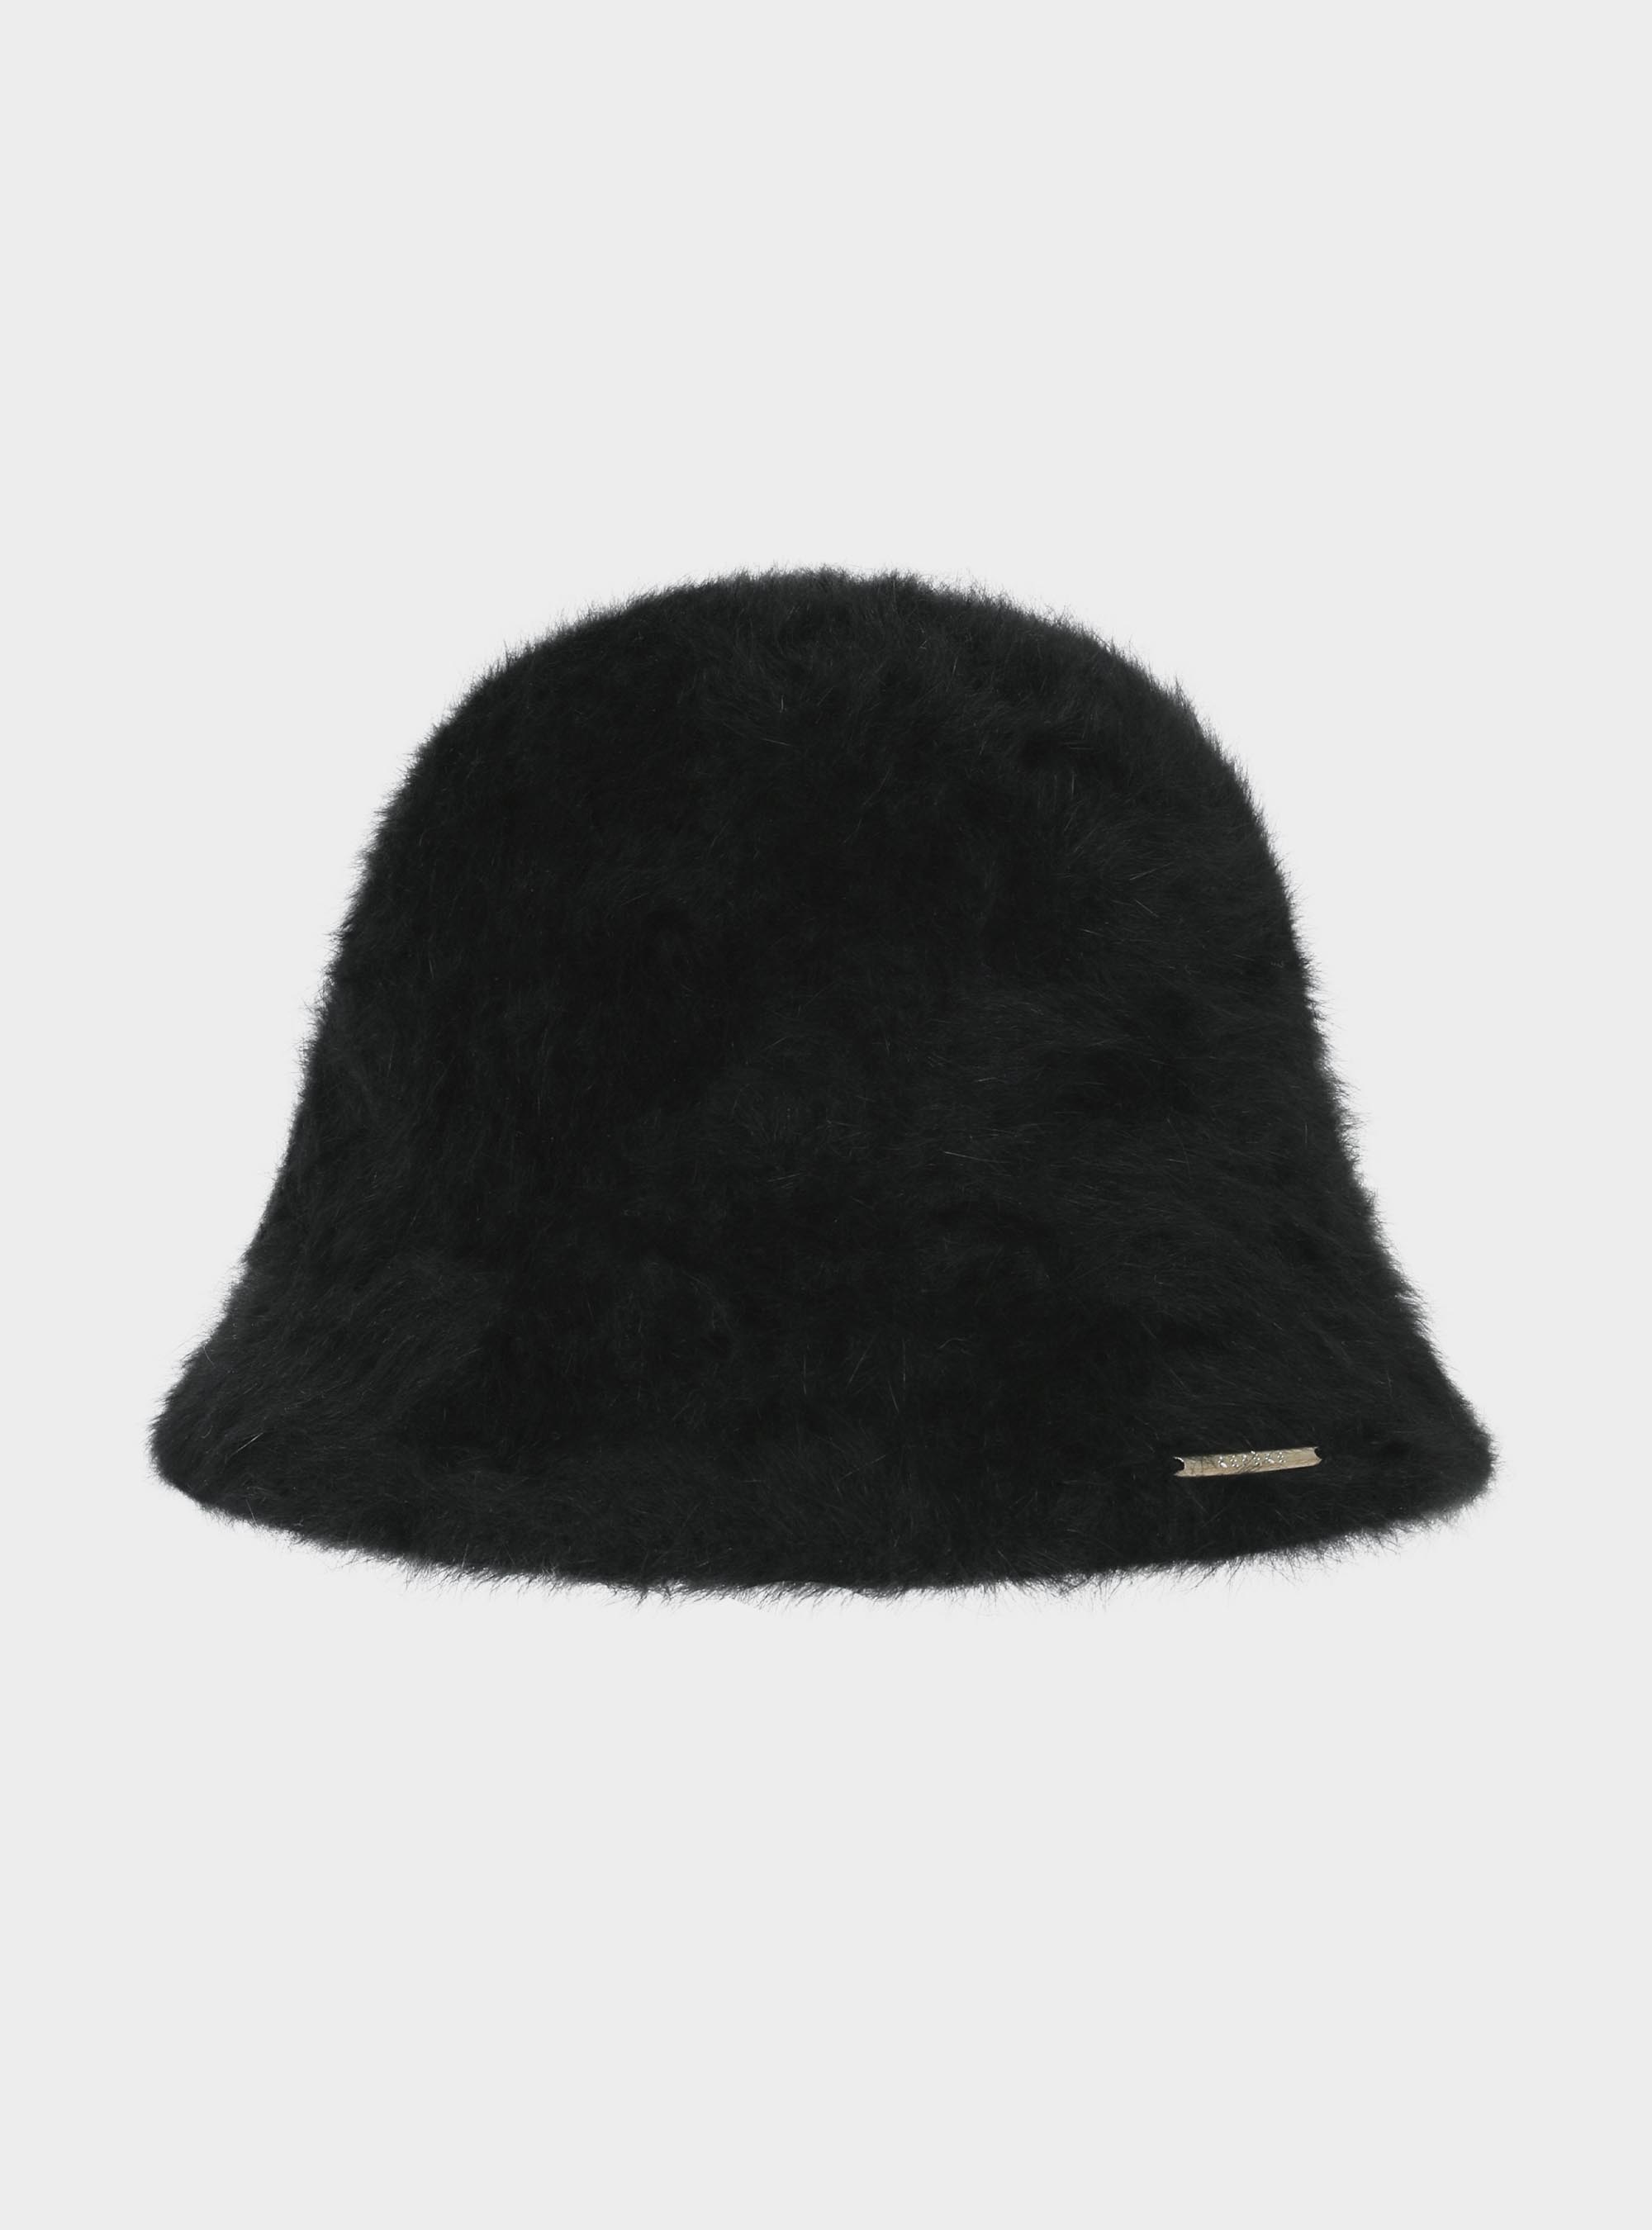 엘고트 퍼 버킷햇  Elgort fur bucket hat (2color)